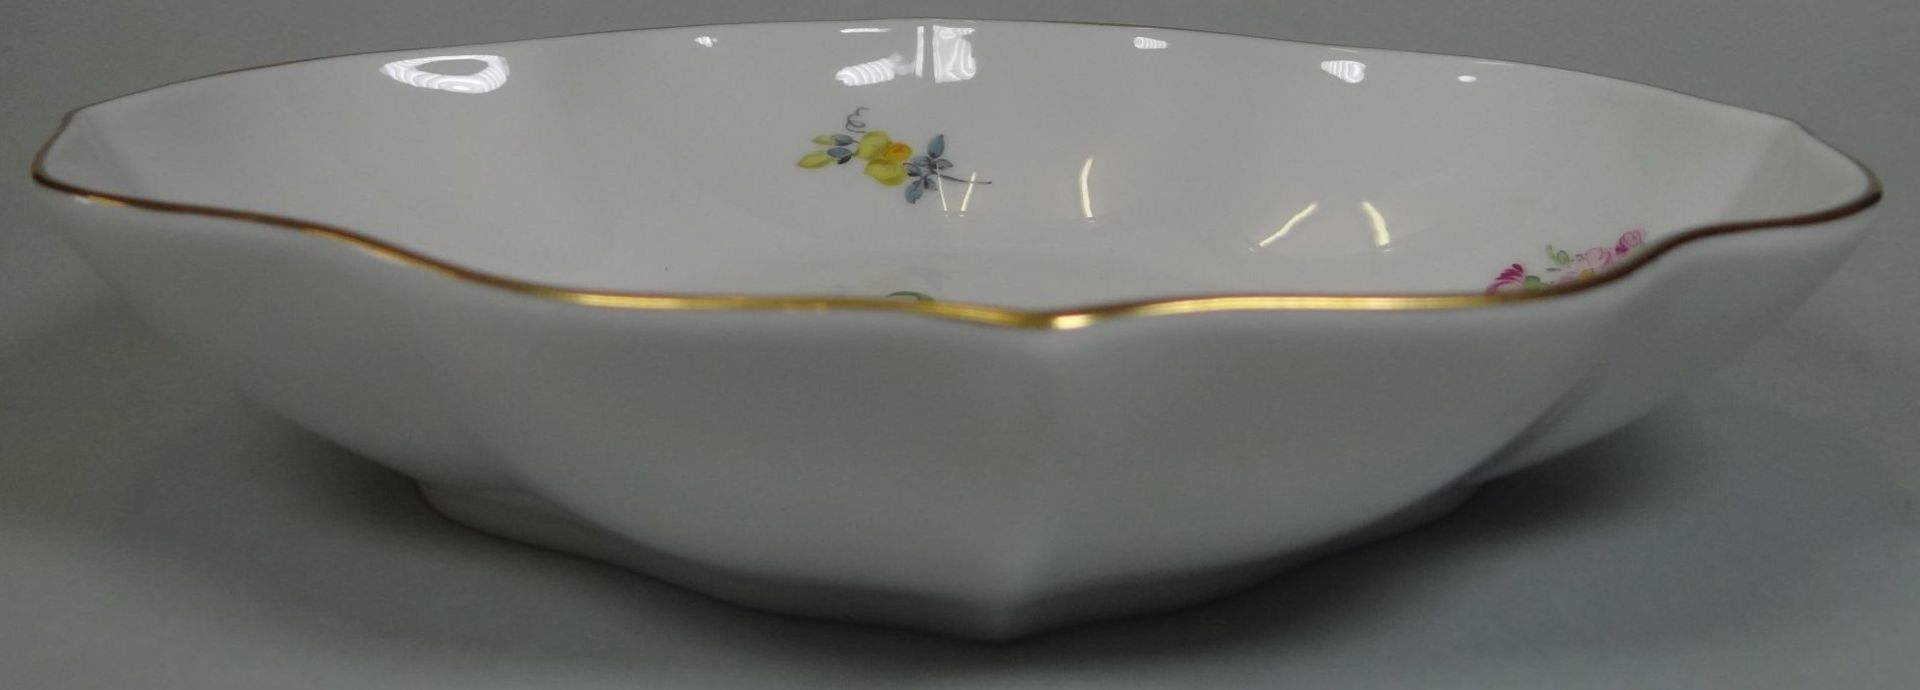 ovale Schale "Meissen" Streublümchen, Schwertermarke mit Unterstrich, H-4 cm, 19x15 c - Bild 3 aus 5